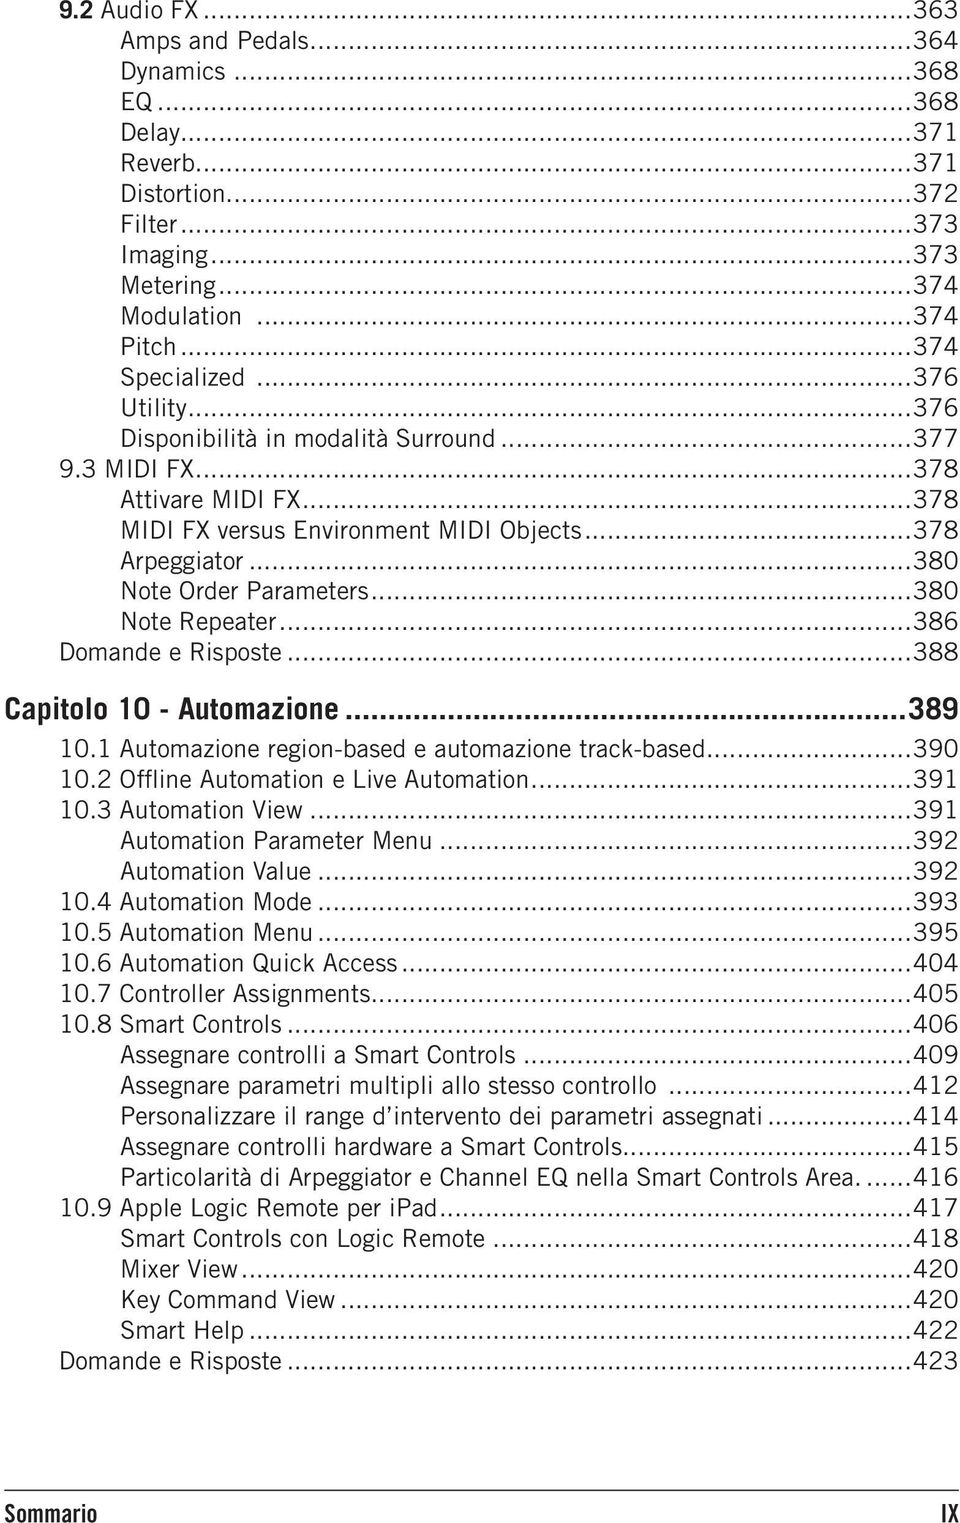 ..380 Note Repeater...386 Domande e Risposte...388 Capitolo 10 - Automazione...389 10.1 Automazione region-based e automazione track-based...390 10.2 Offline Automation e Live Automation...391 10.